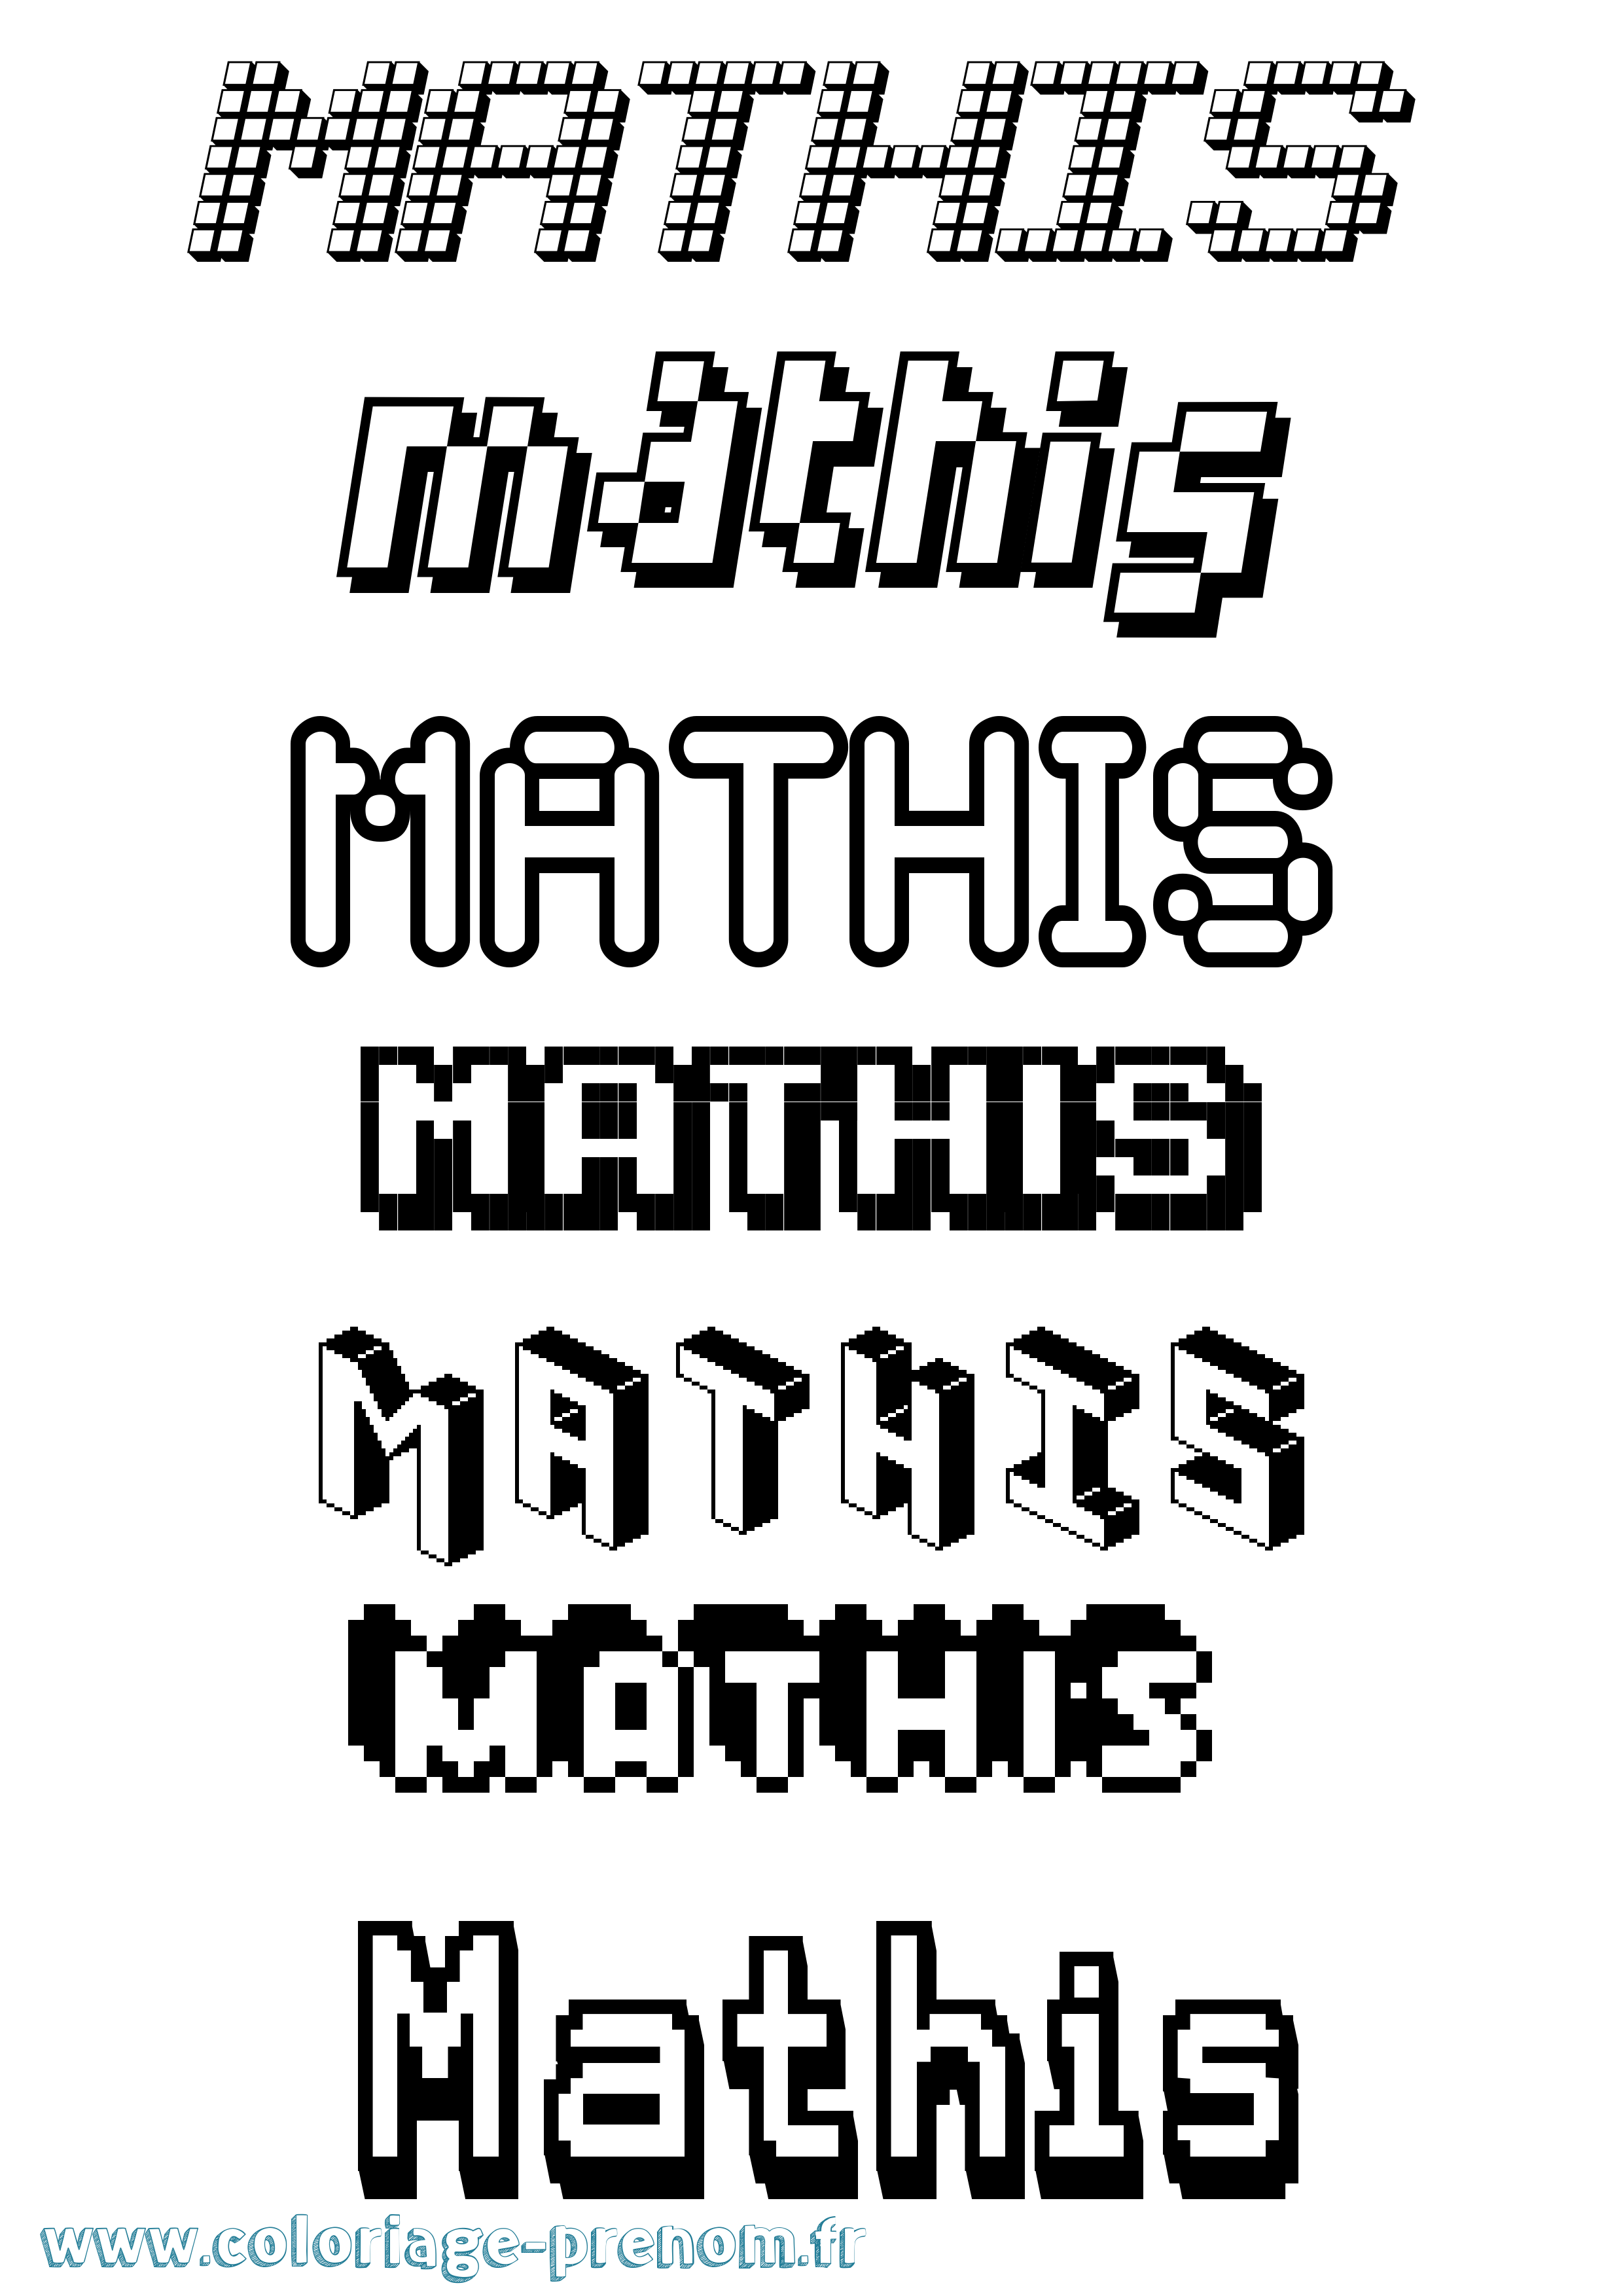 Coloriage prénom Mathis Pixel